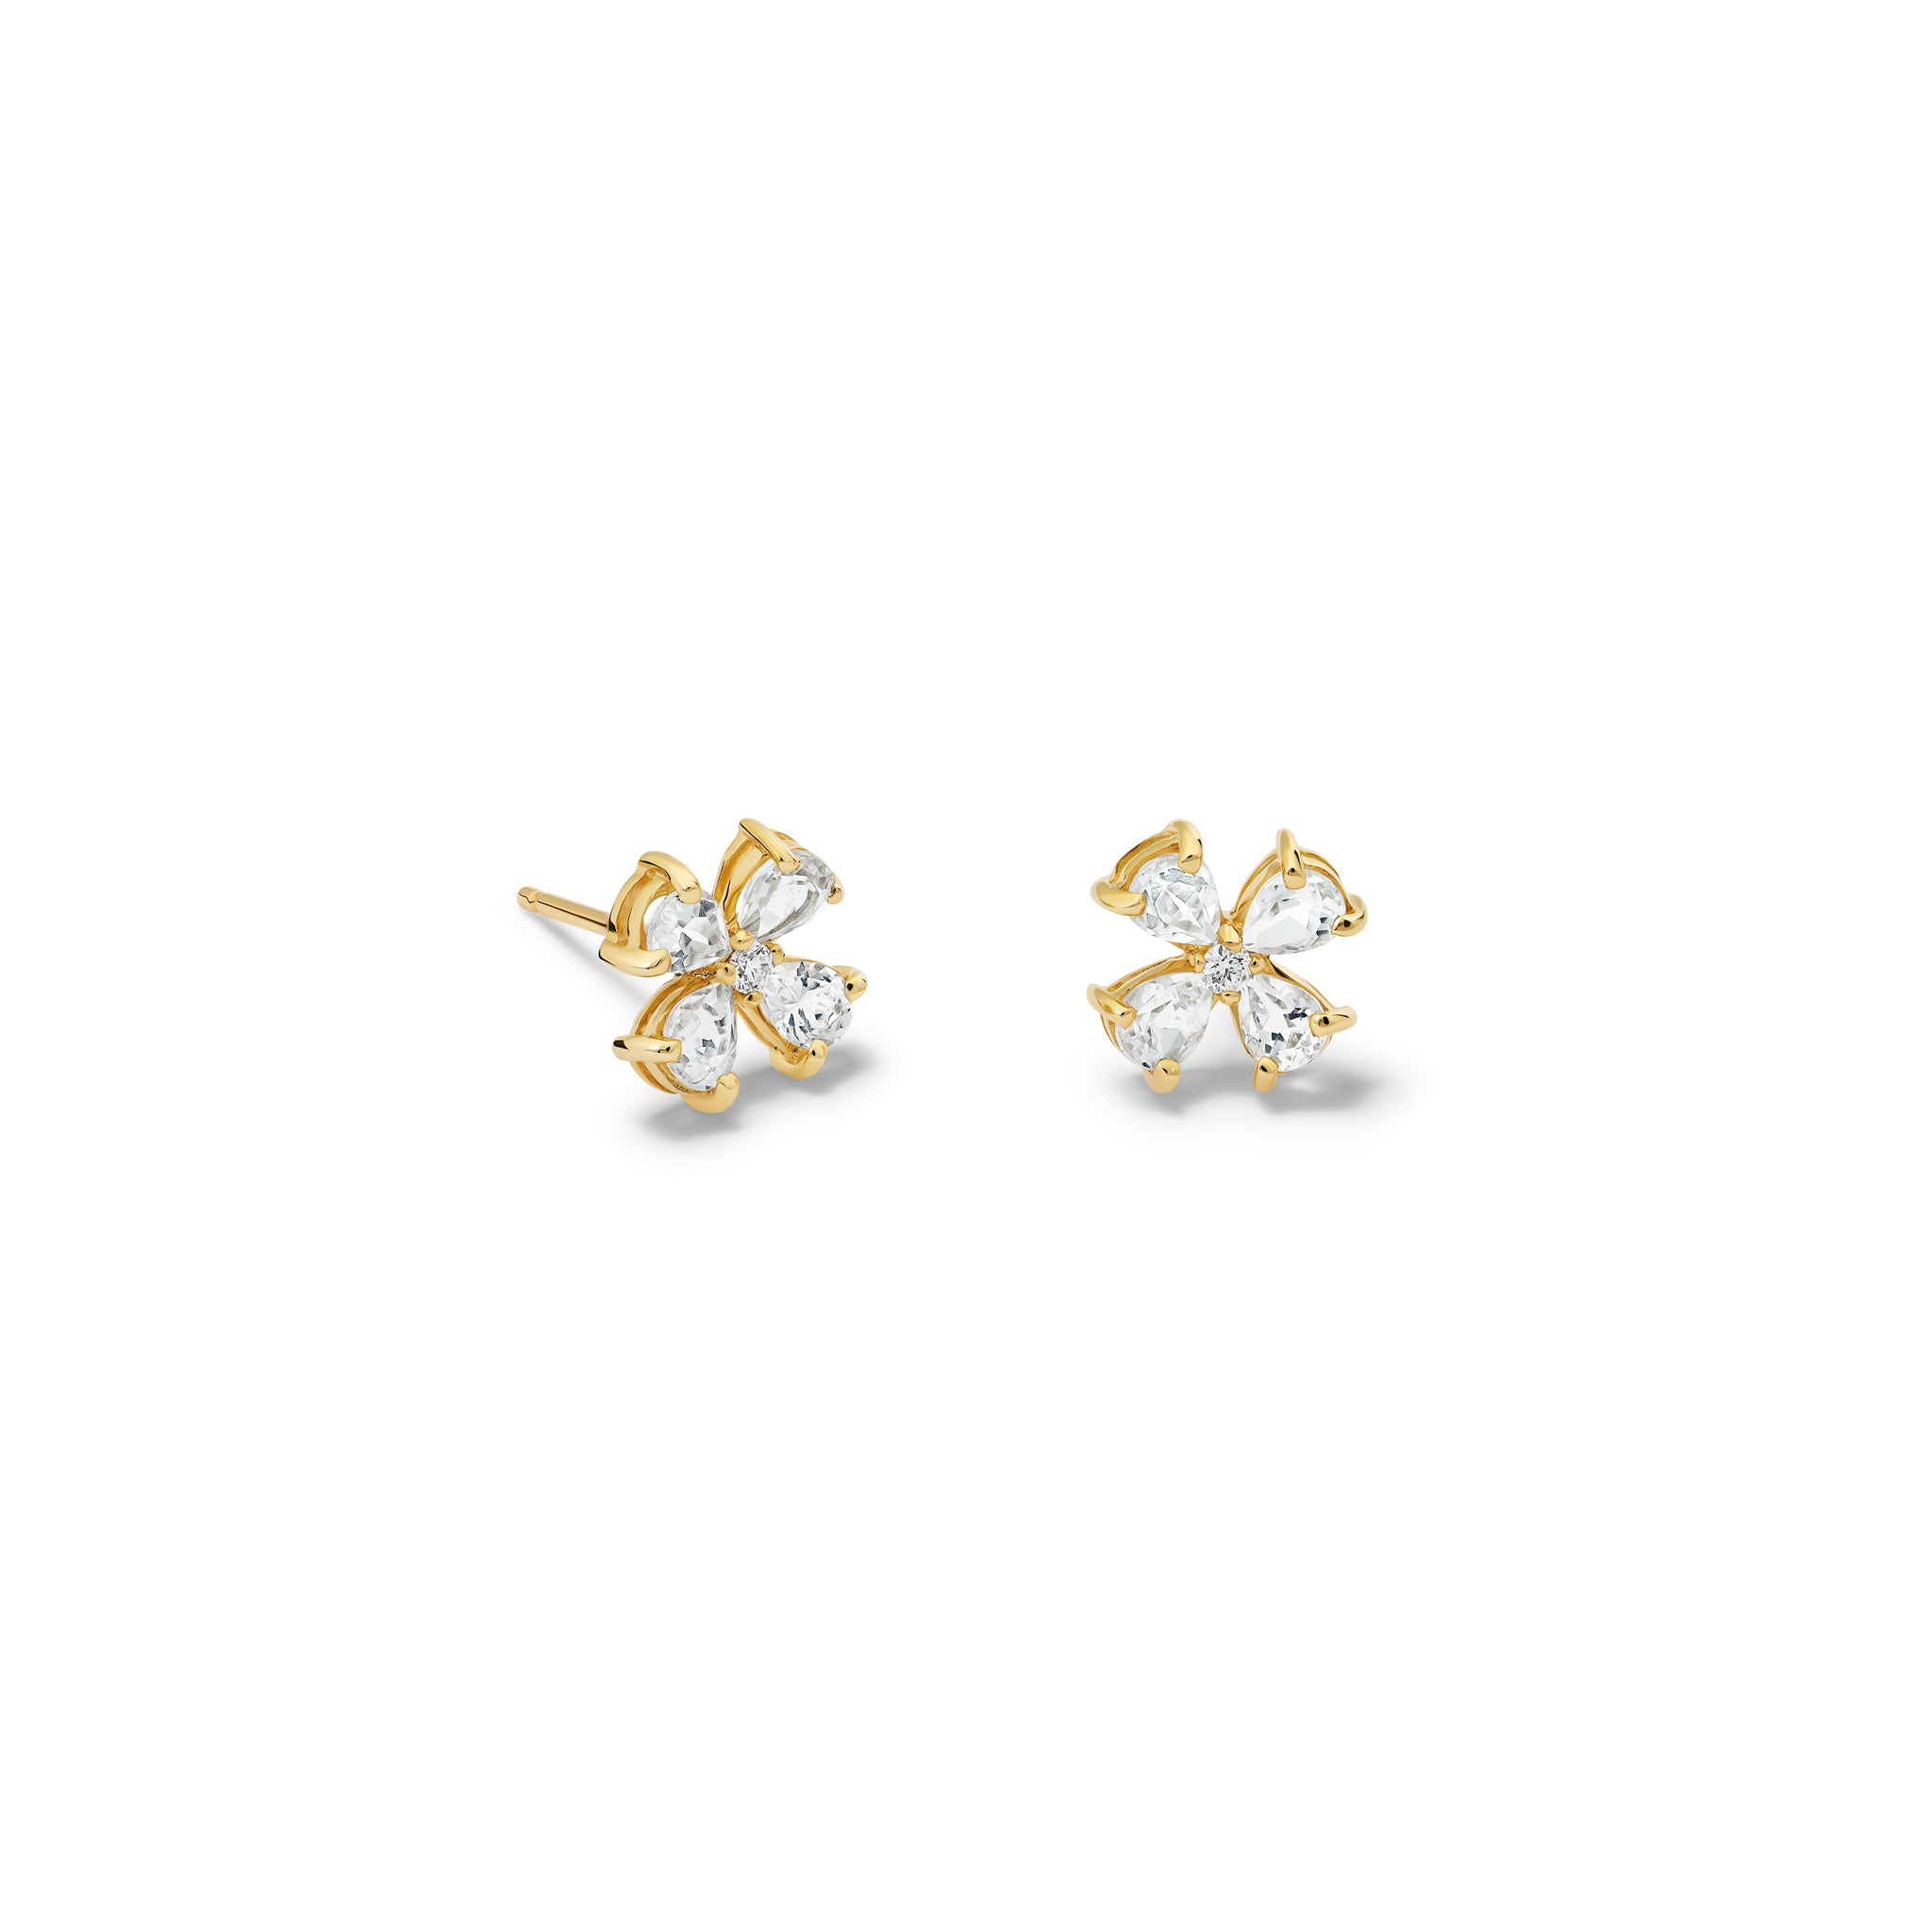 Klover Small Earrings Yellow Gold - White Topaz & Diamond